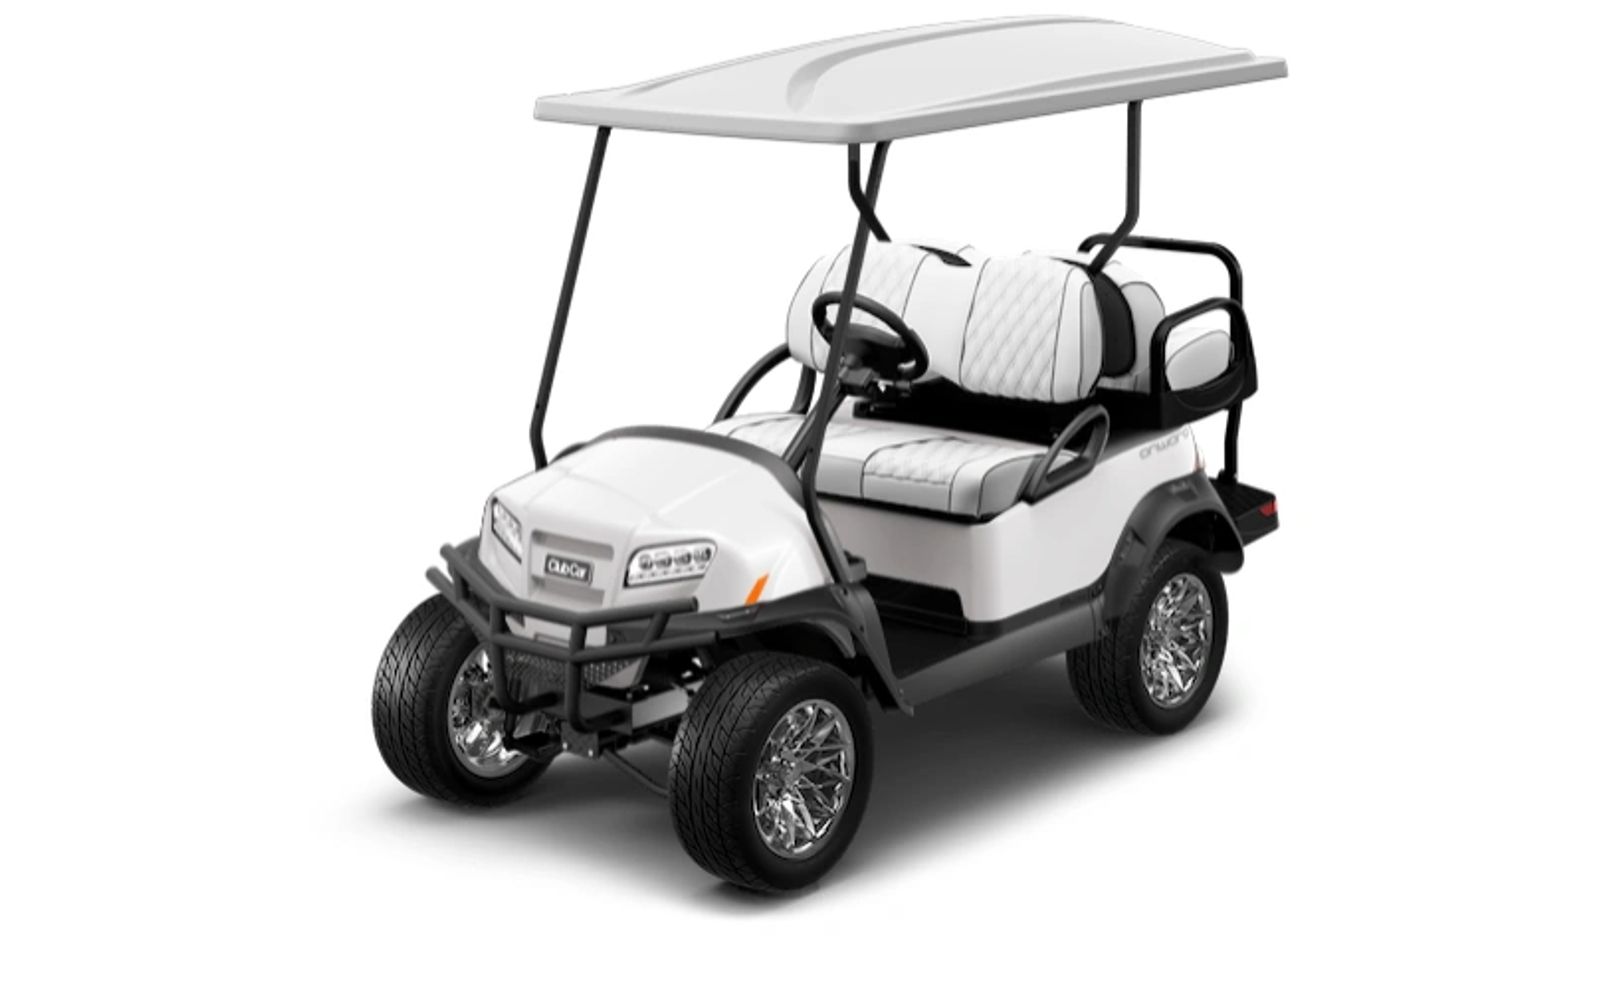 Club Car Onward electric or gas powered golf cart